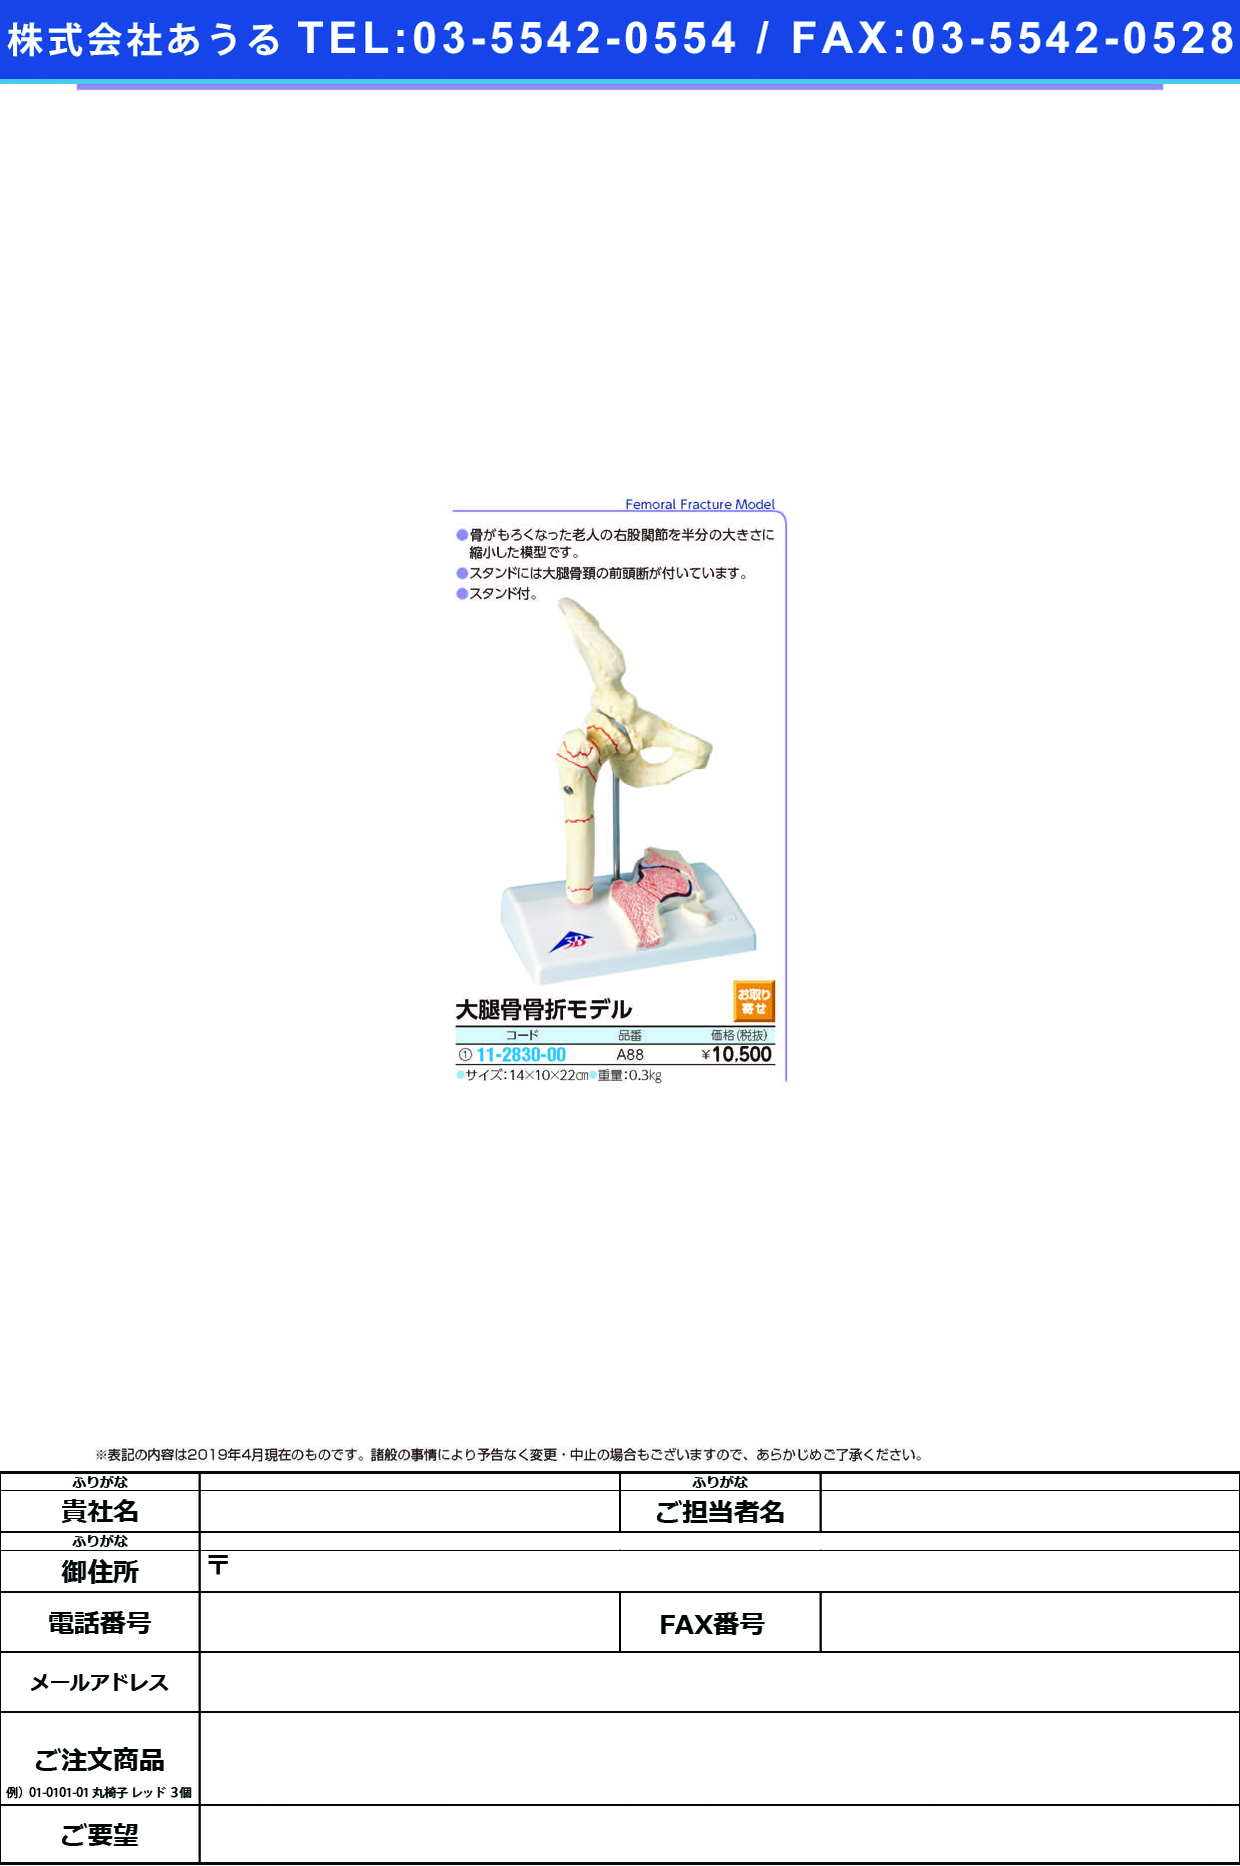 (11-2830-00)大腿骨骨折解説模型（１／２） A88 ﾀﾞｲﾀｲｺﾂｺｯｾﾂｶｲｾﾂﾓｹｲ(京都科学)【1台単位】【2019年カタログ商品】